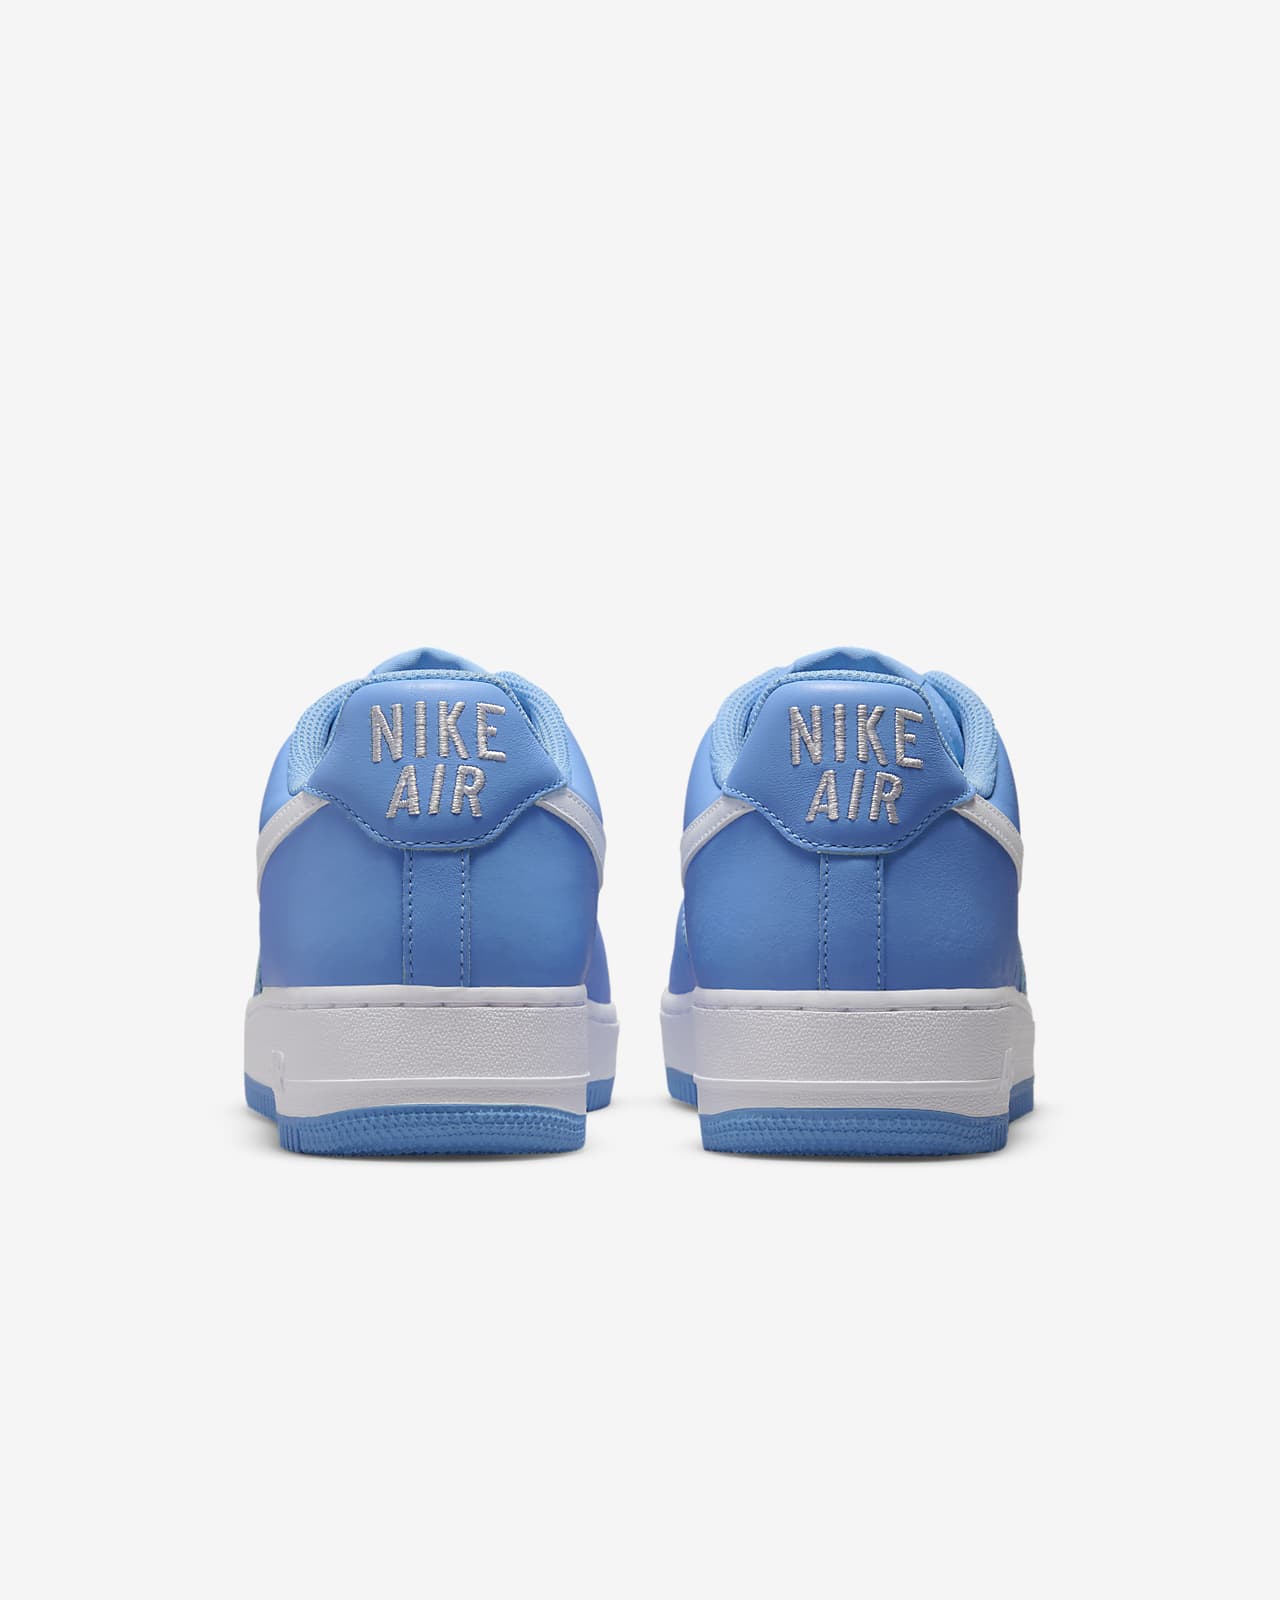 eindeloos hoop Wanorde Nike Air Force 1 Low Retro Men's Shoes. Nike LU